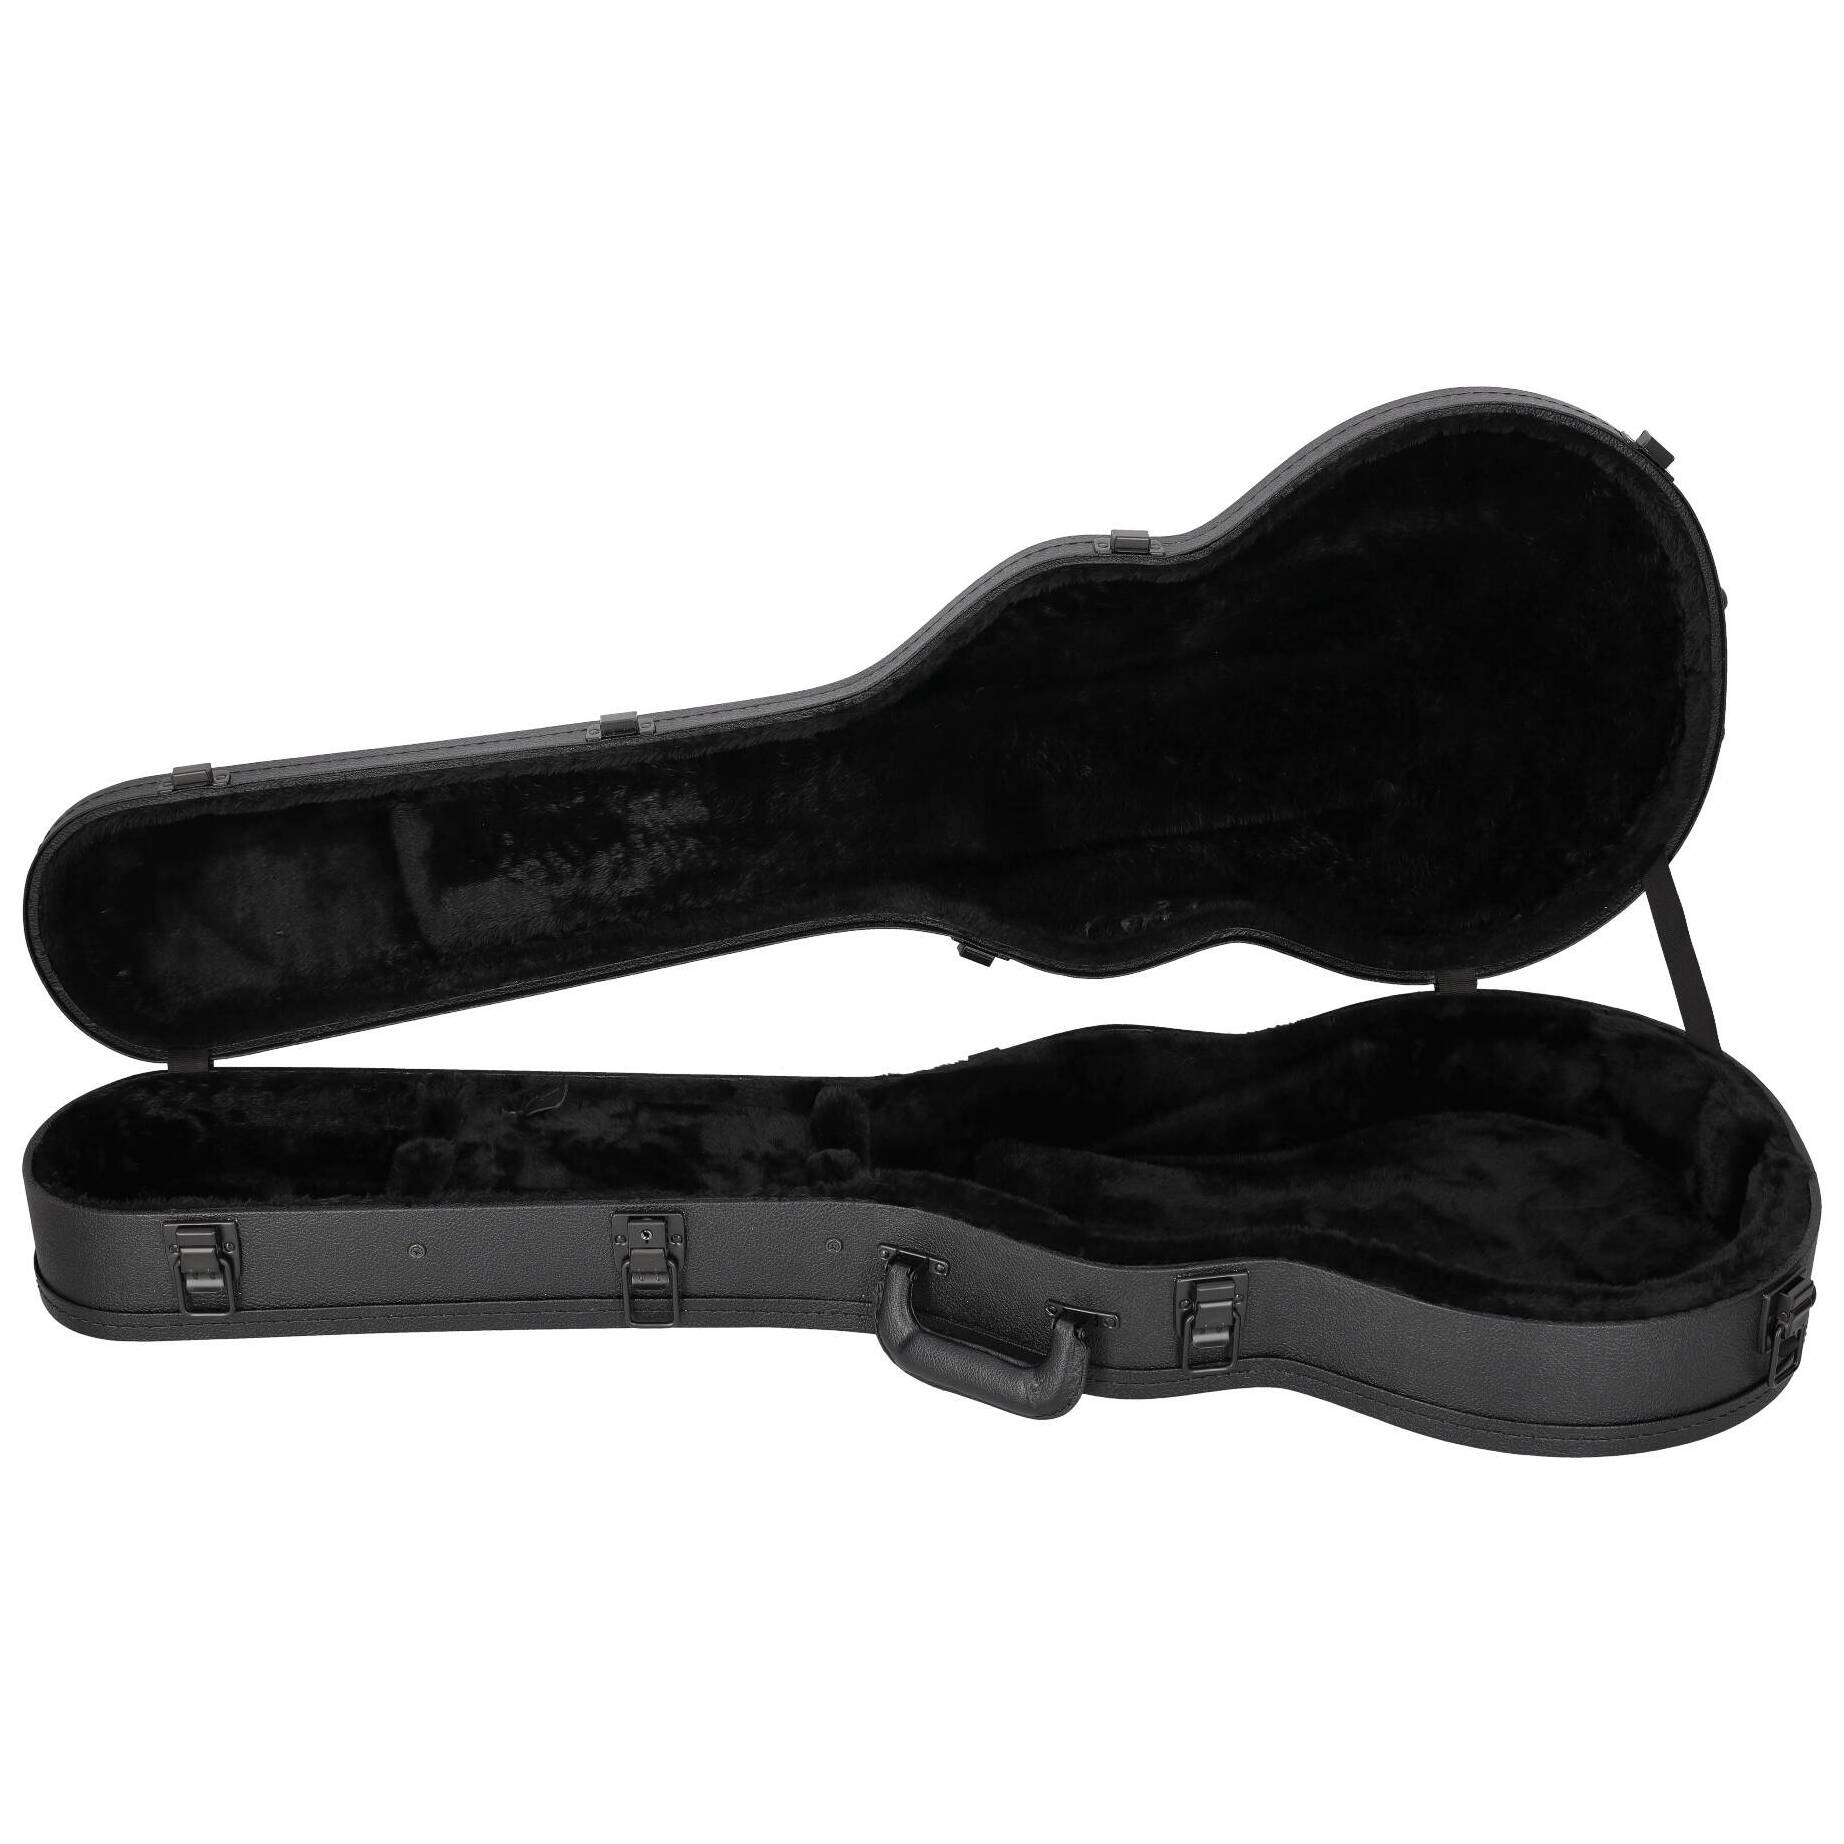 Gibson Les Paul Modern Hardshell Case 2